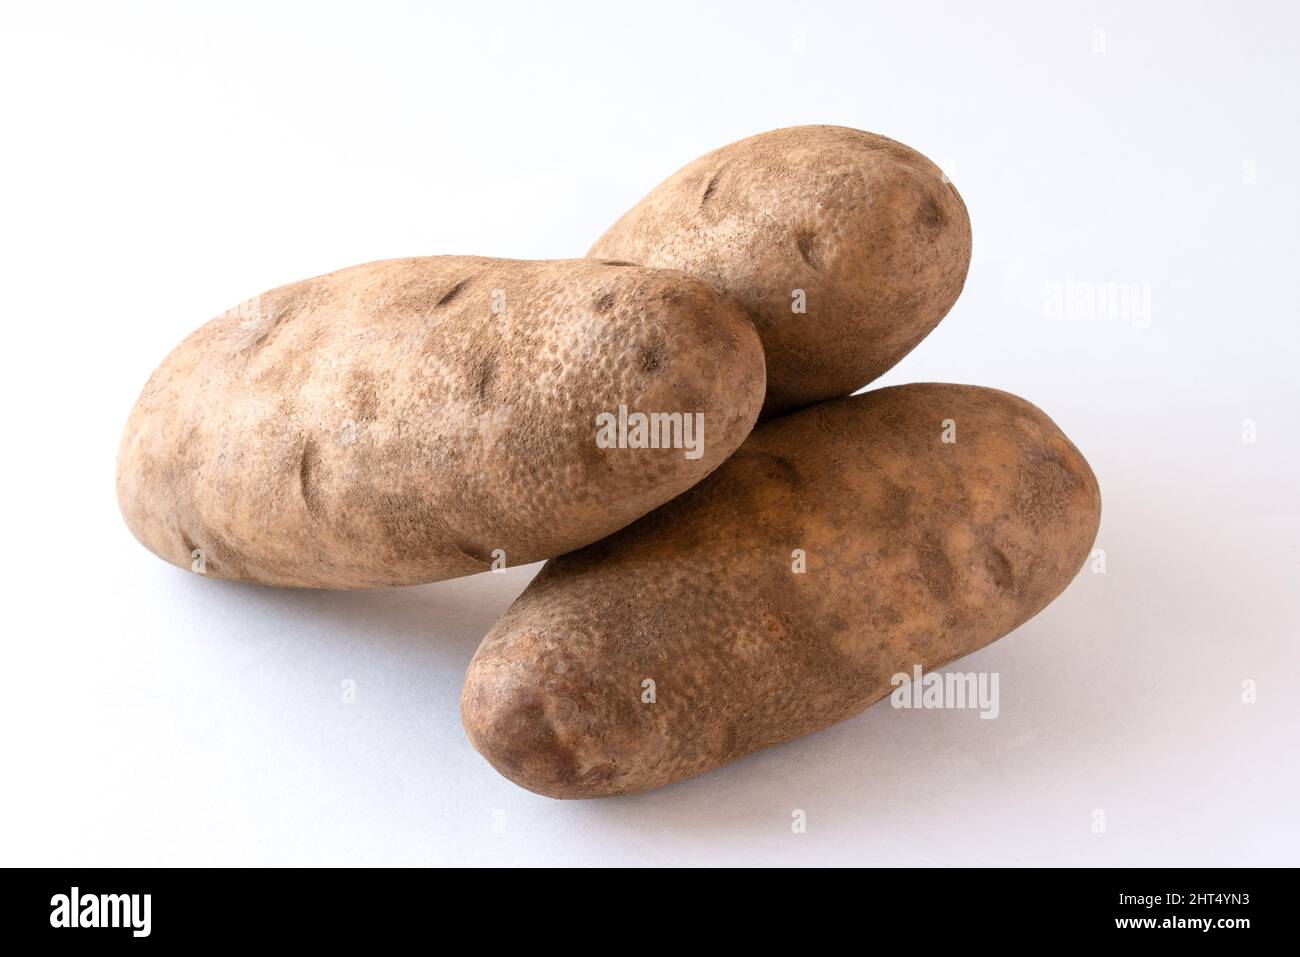 Pommes de terre Russet entières Banque D'Images